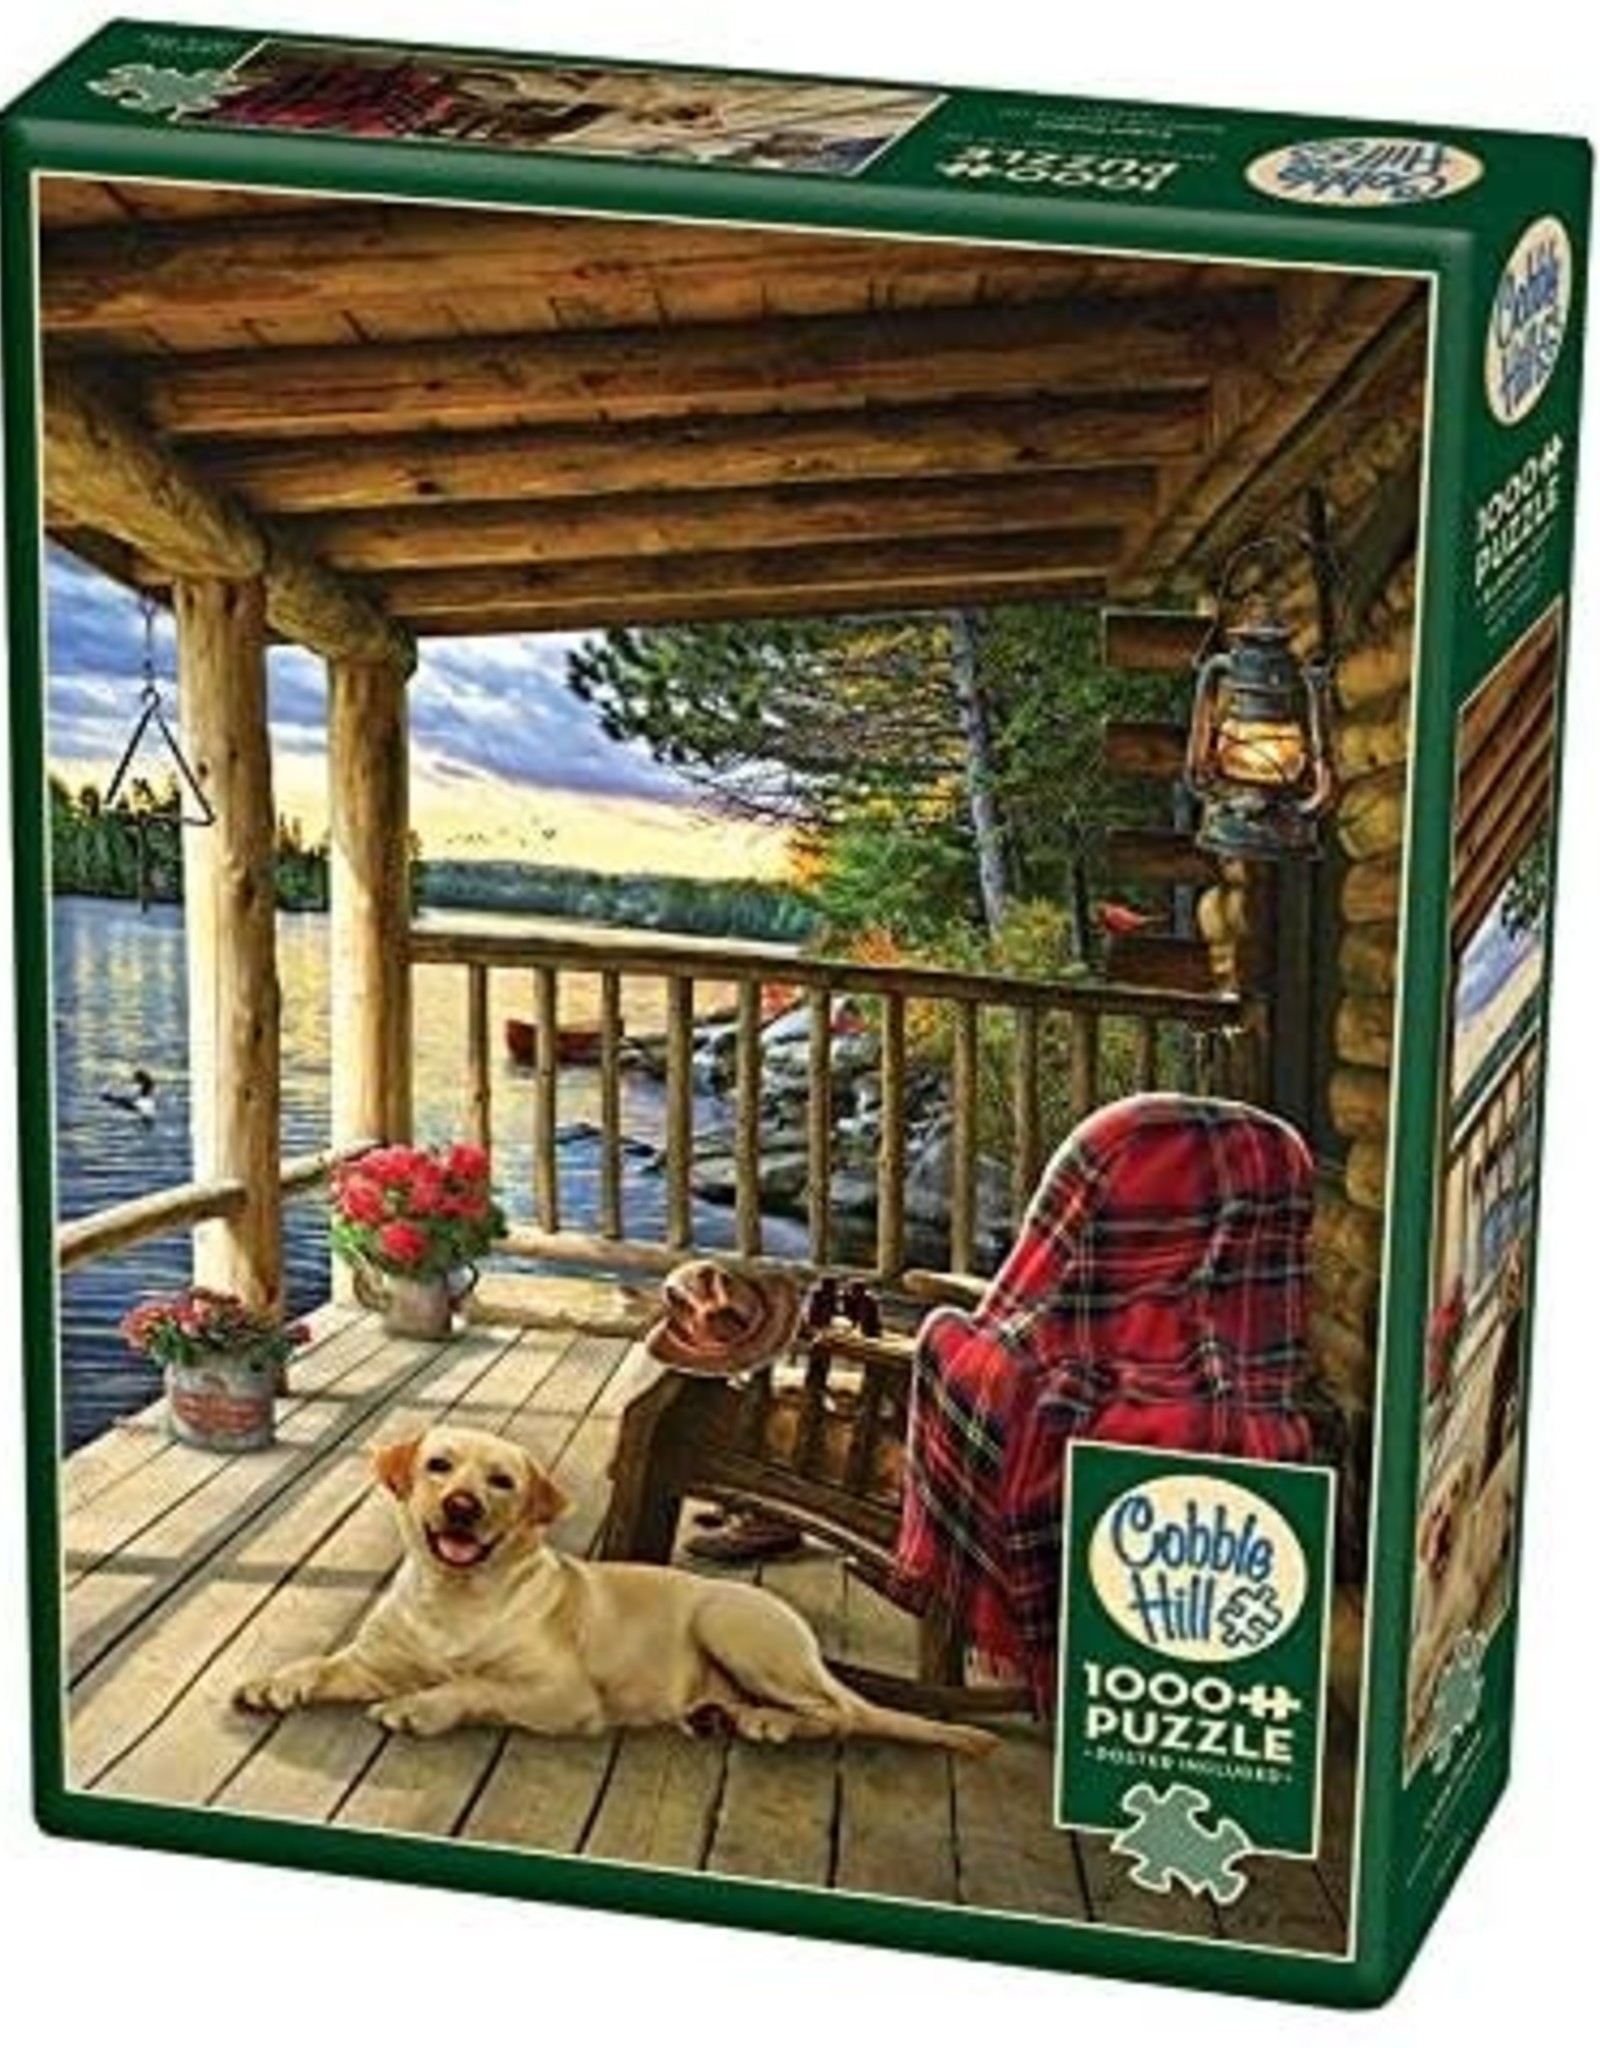 Cobble Hill Puzzles Cabin Porch - 1000 Piece Puzzle